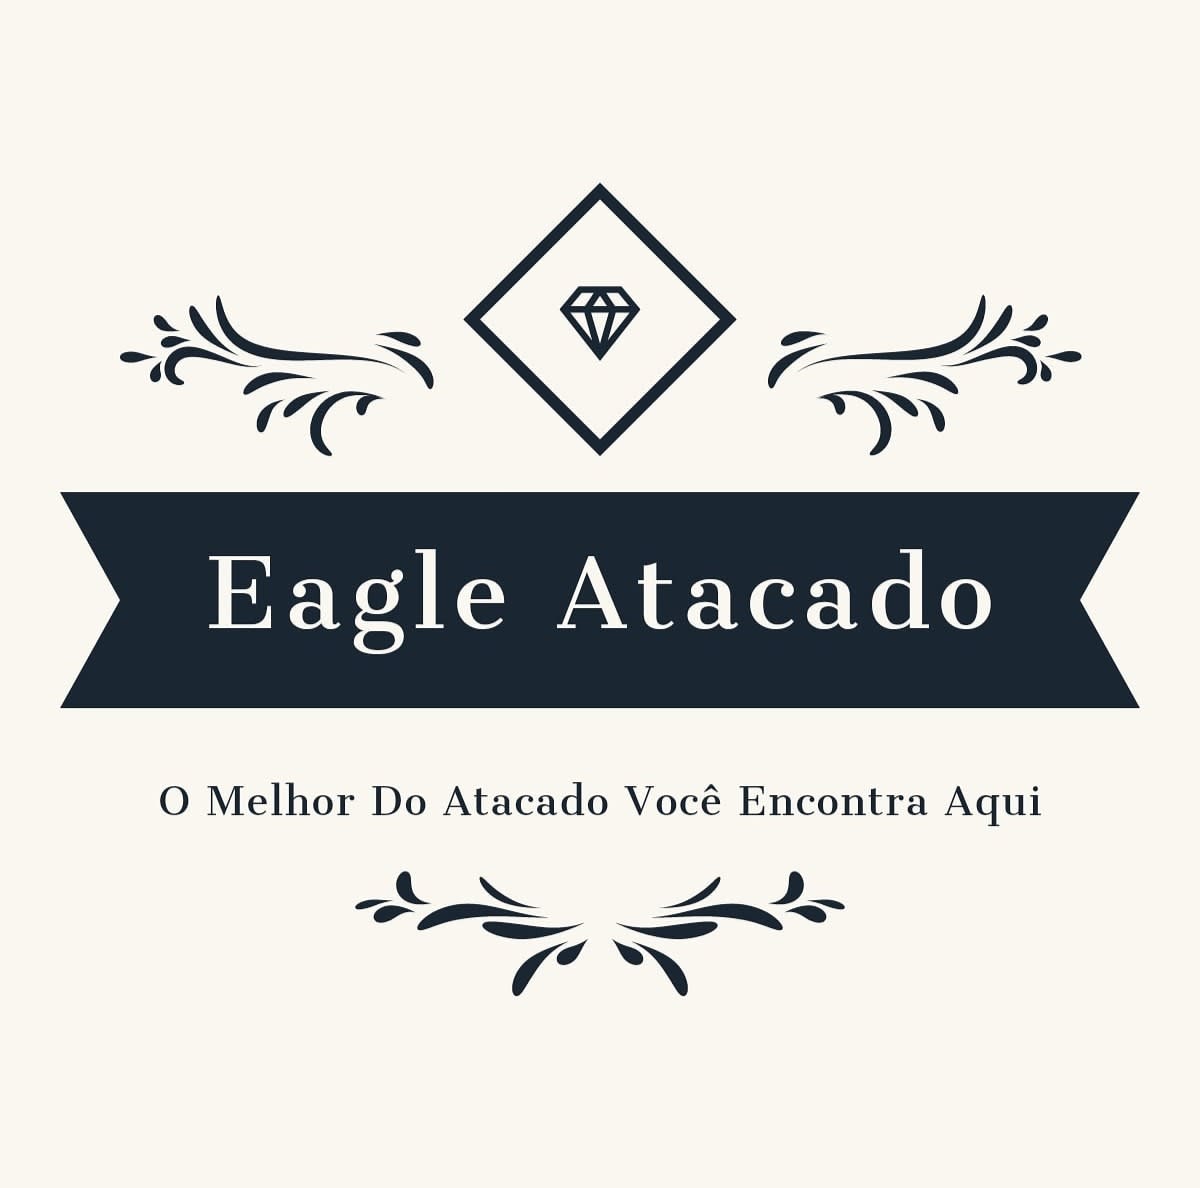 Eagle Atacado